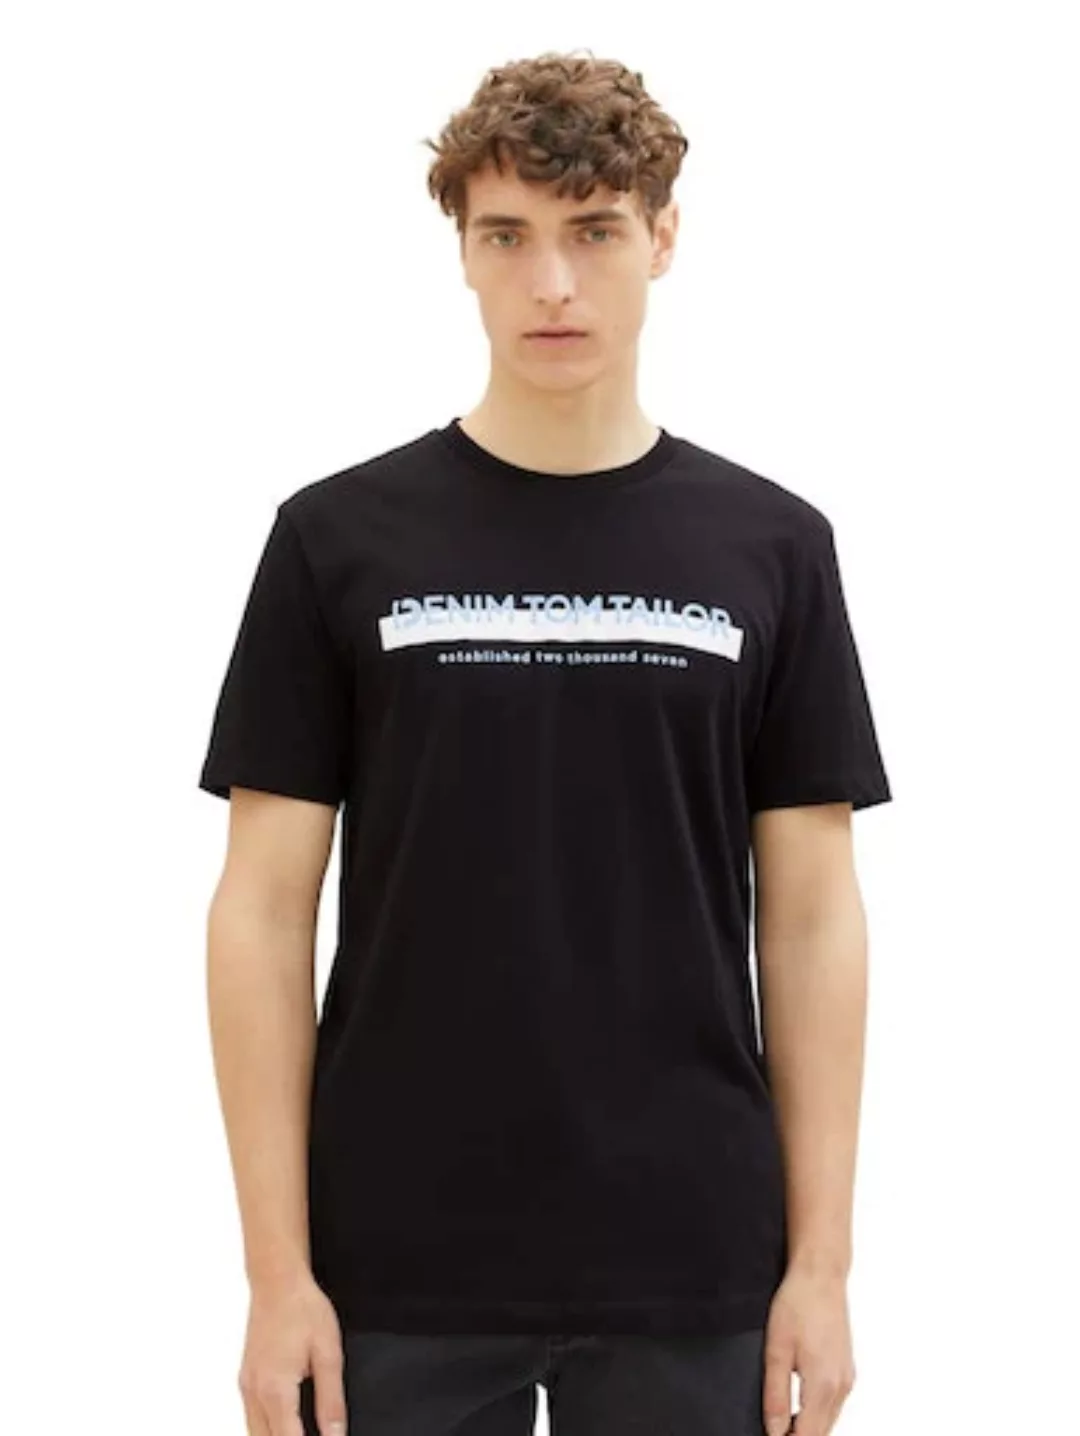 TOM TAILOR Denim T-Shirt, mit Logofrontprint günstig online kaufen